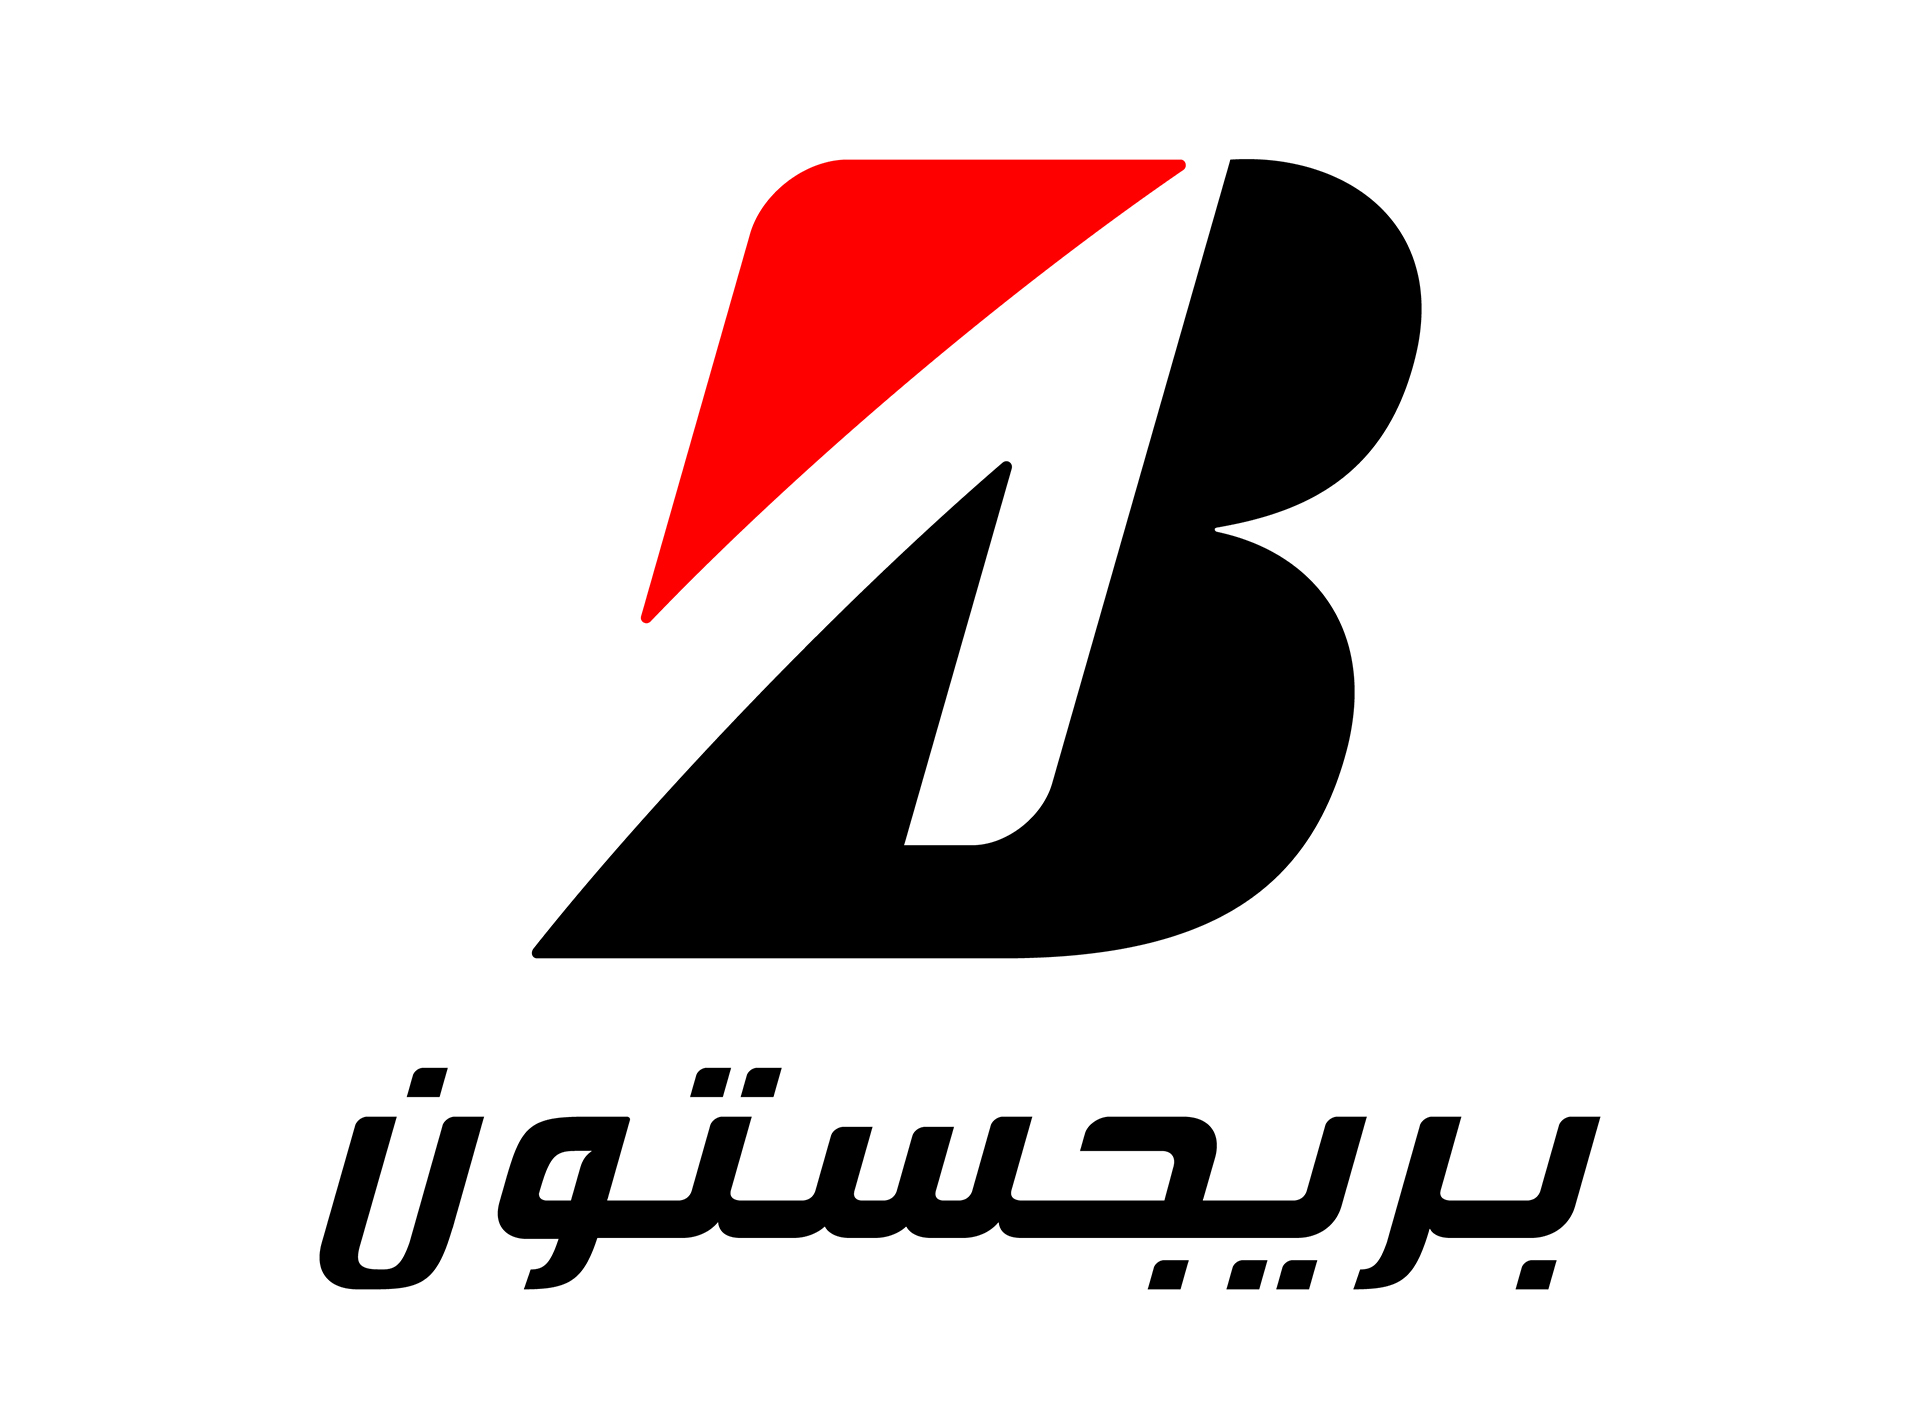 Bridgestone Tunisie - Lancement de notre nouvelle page Facebook